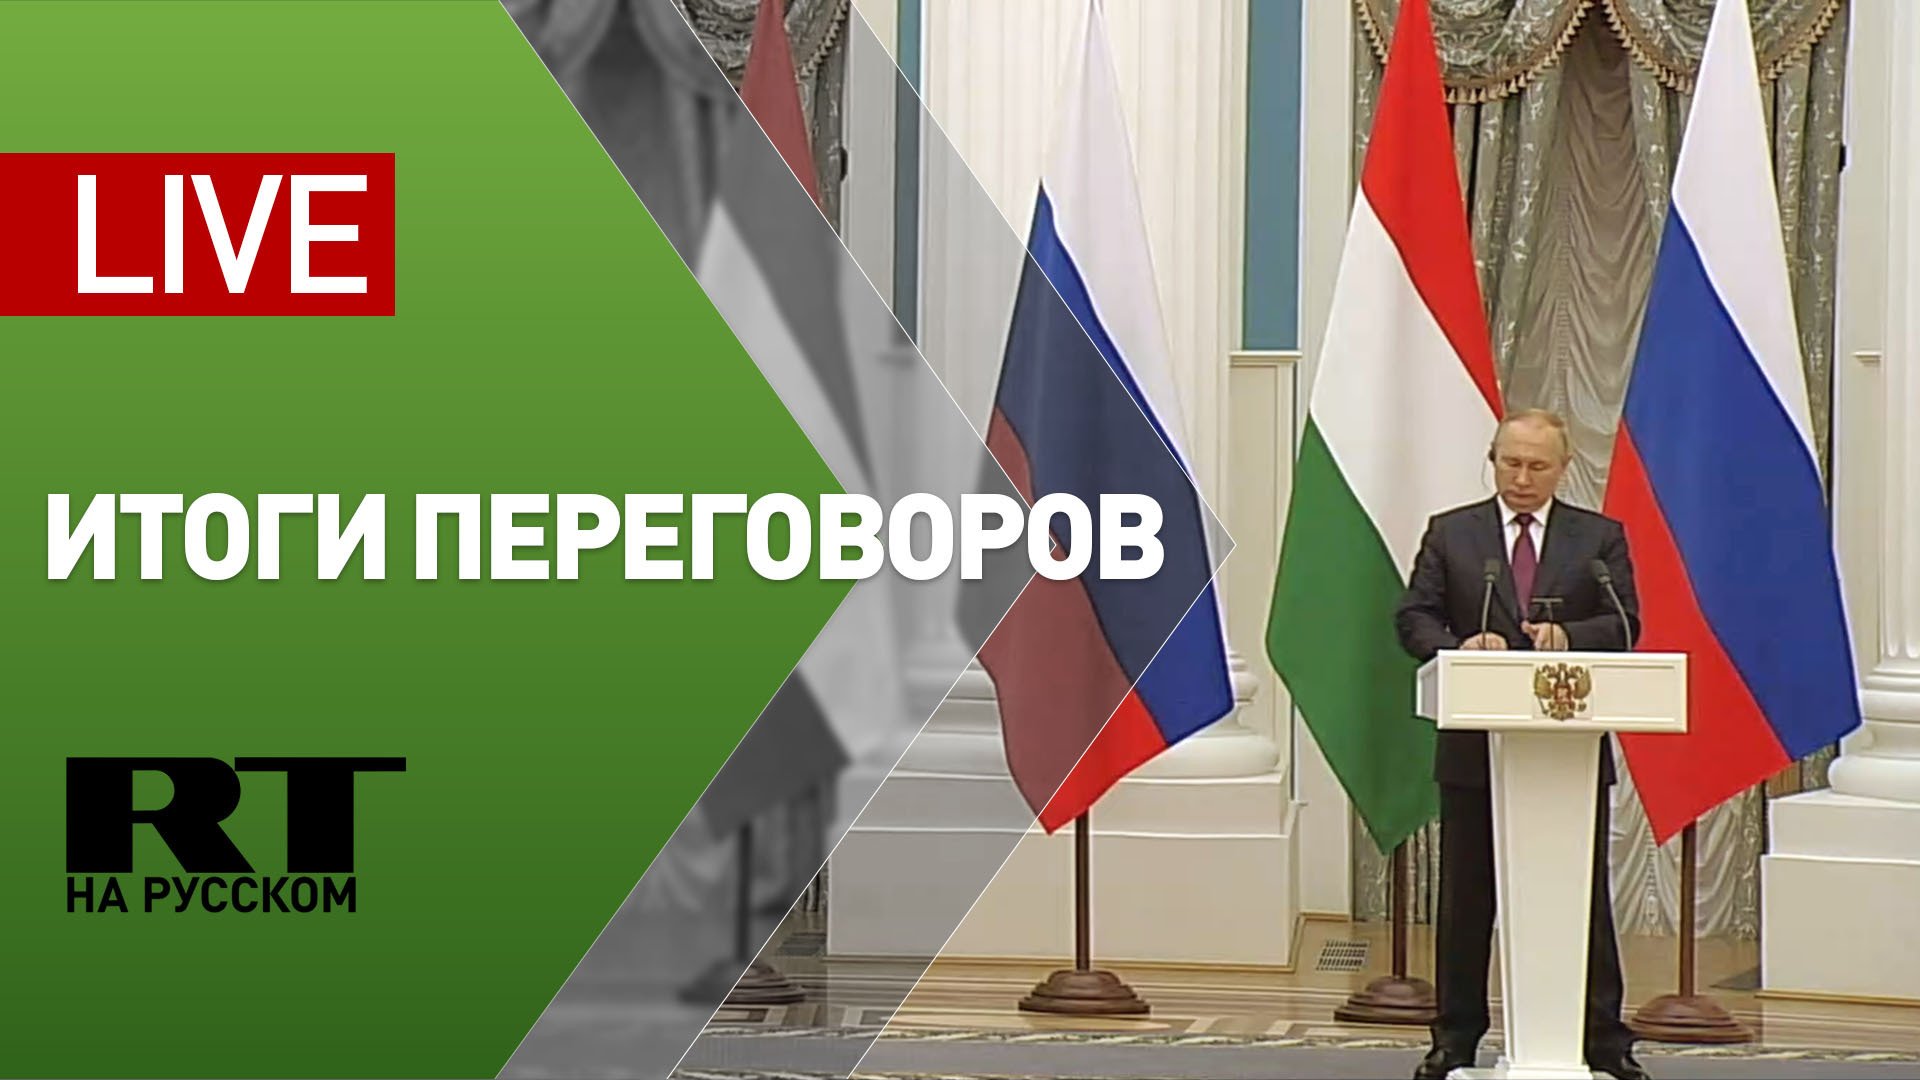 Пресс-конференция Путина и премьер-министра Венгрии Орбана — LIVE